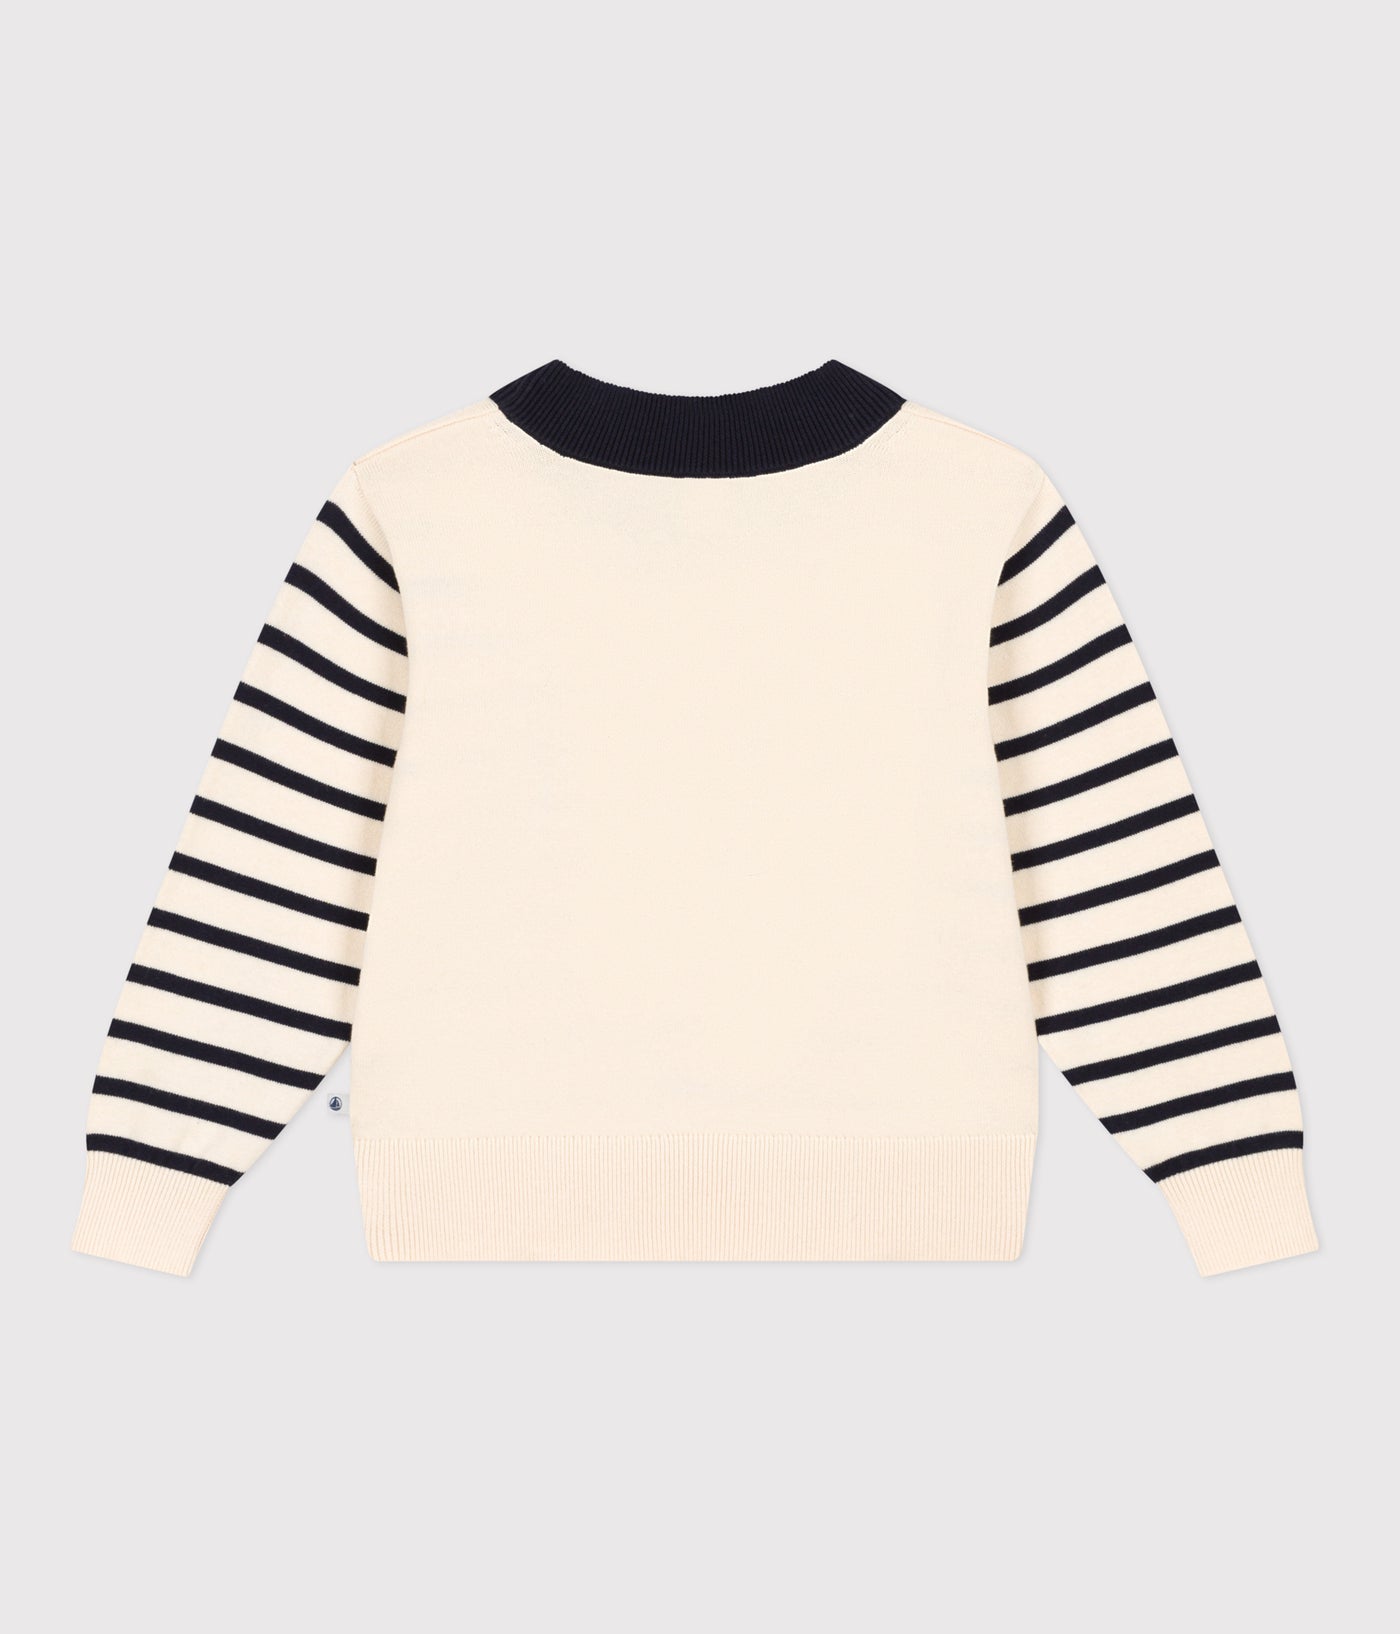 Multi-Colored Striped Sweater